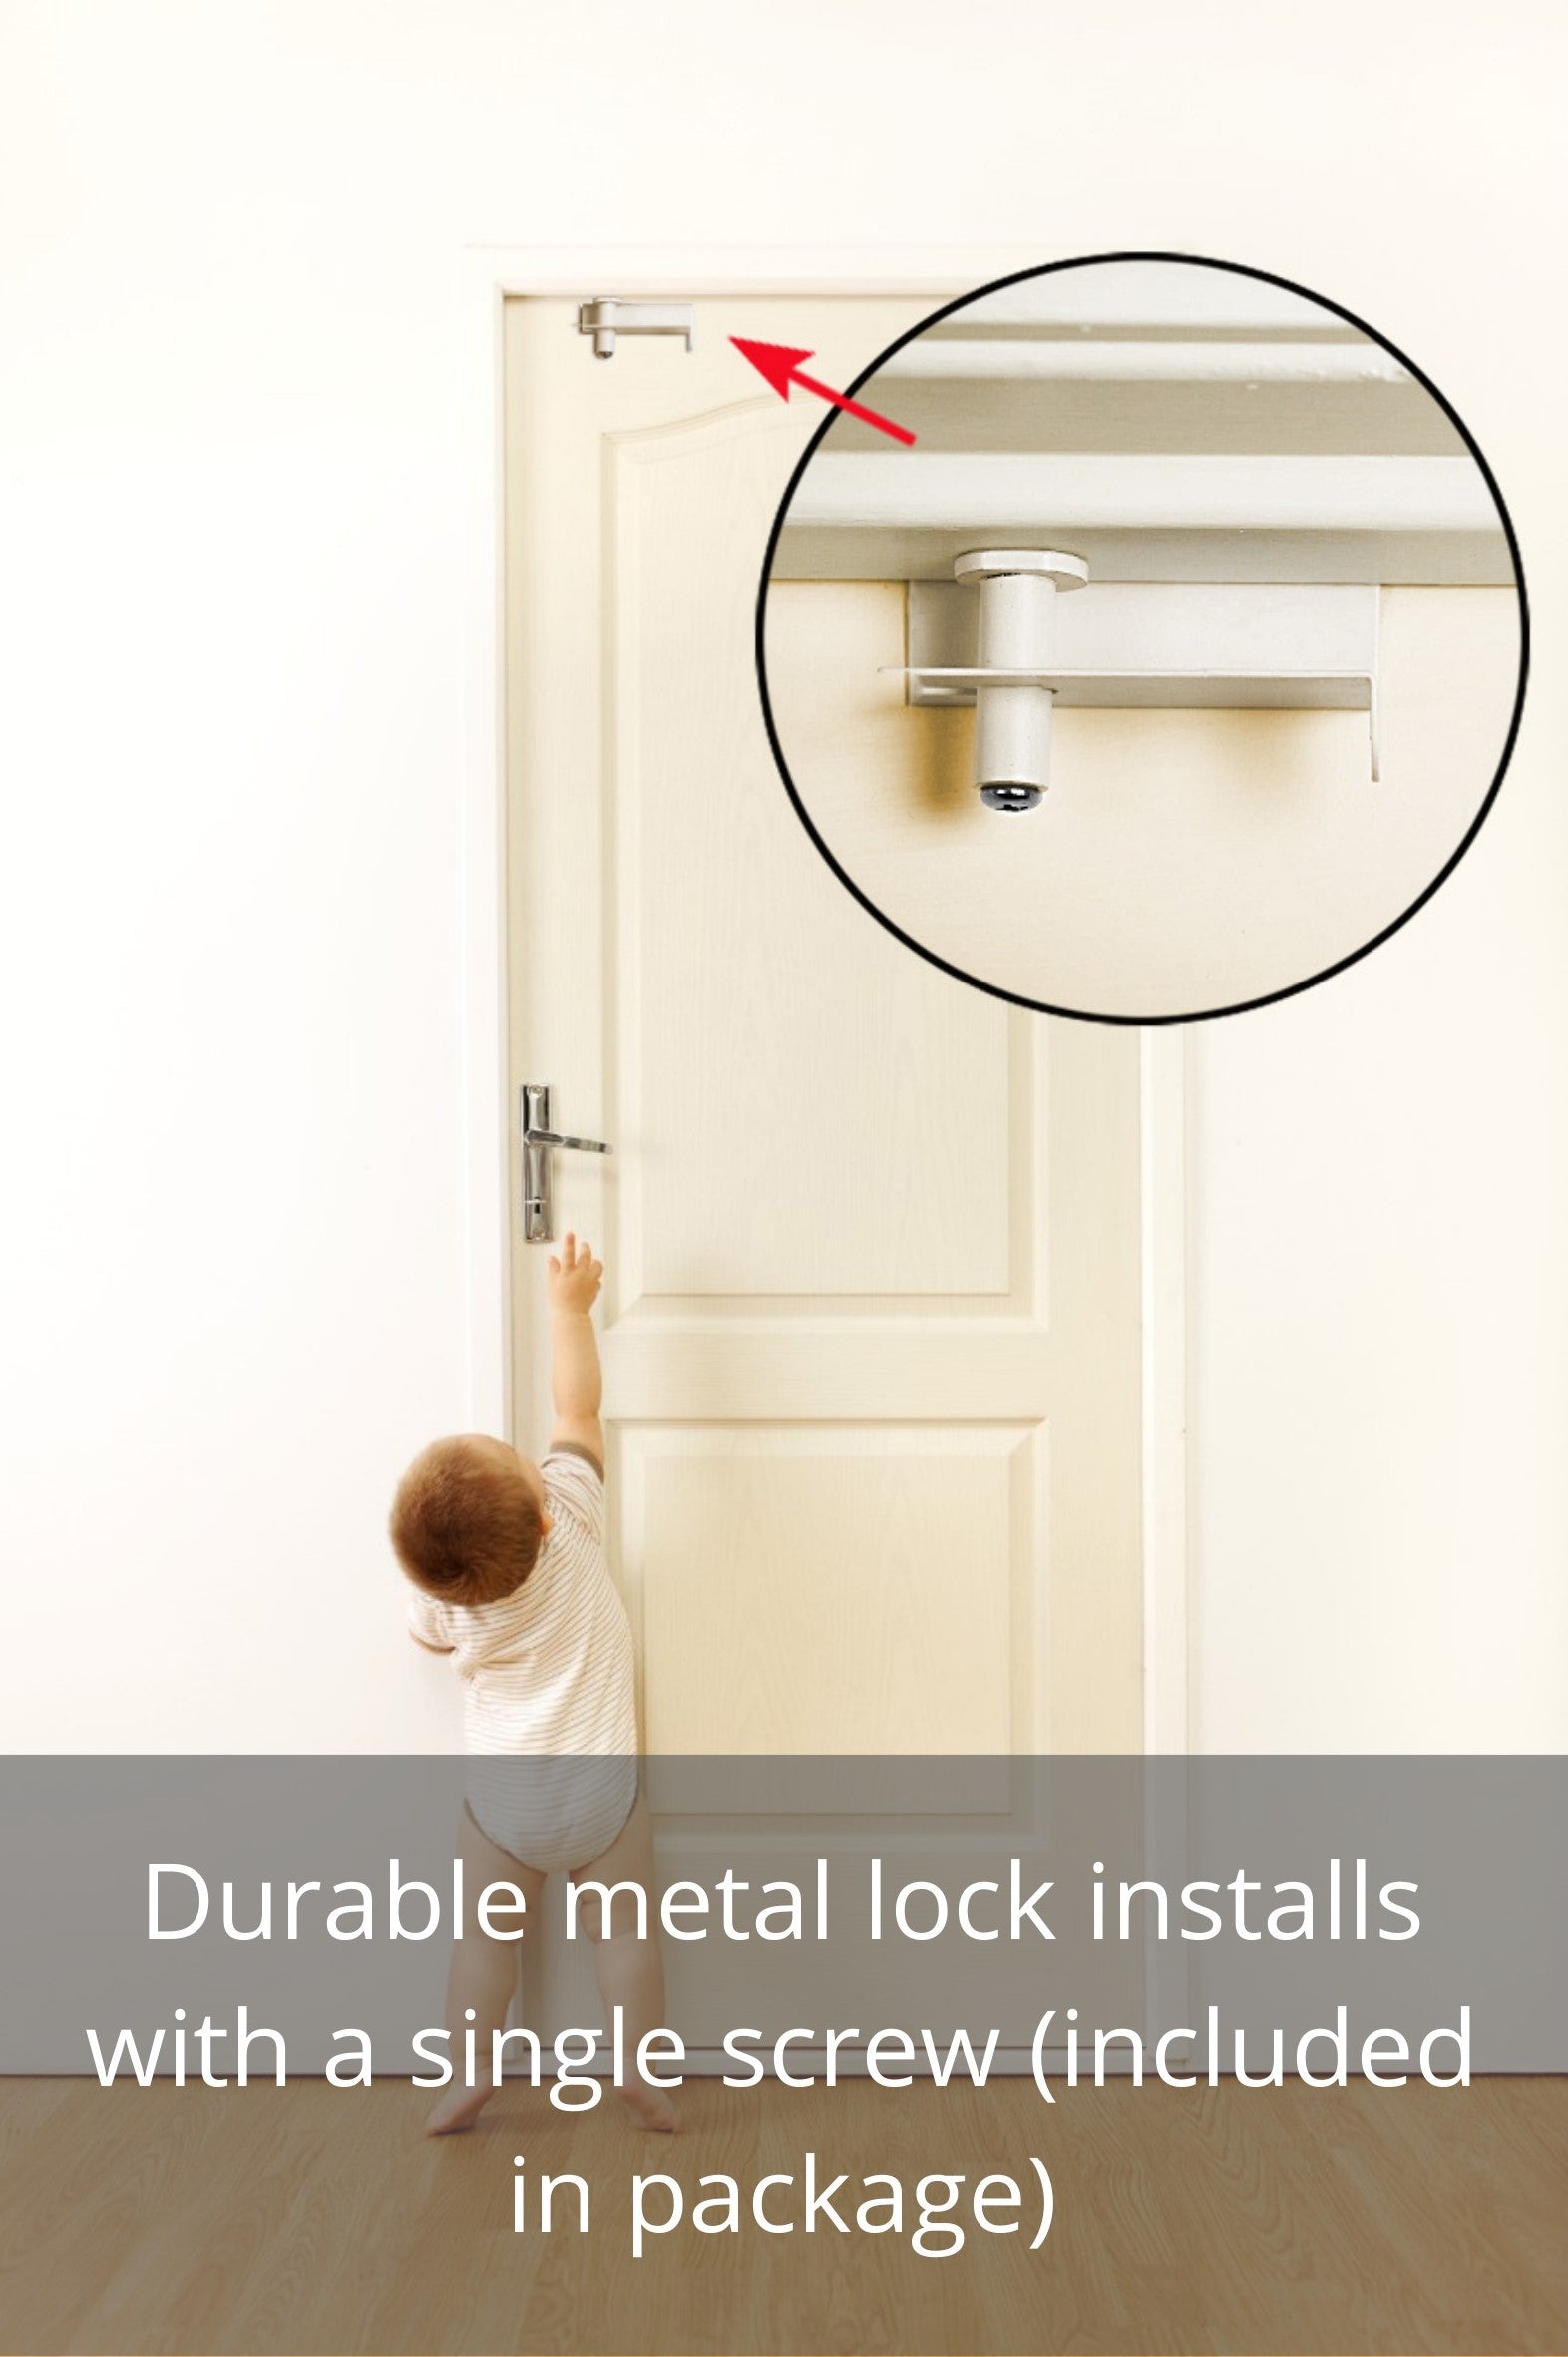 Child Proof Door Top Lock - BILLROAD Top Door Lock for Kids Safety Made of  Durable Metal | Adjustable Lock Child Safety Top Lock for 0.8-2 inch Thick